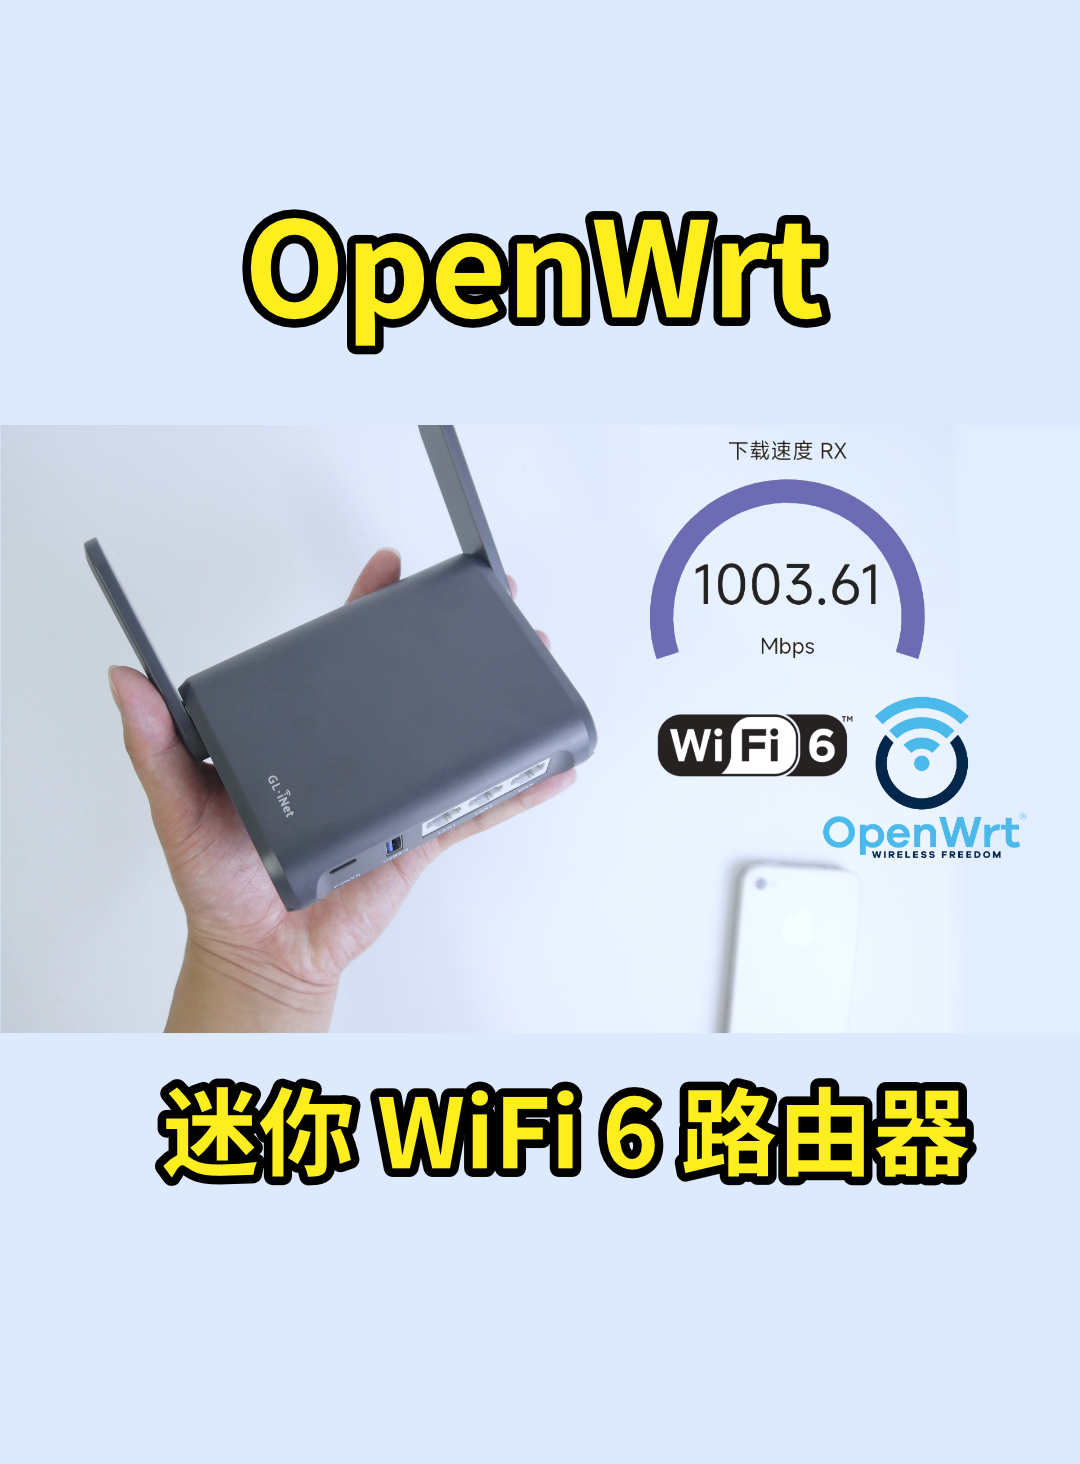 巴掌大的 WiFi6 路由器，openwrt 系統隨意編譯